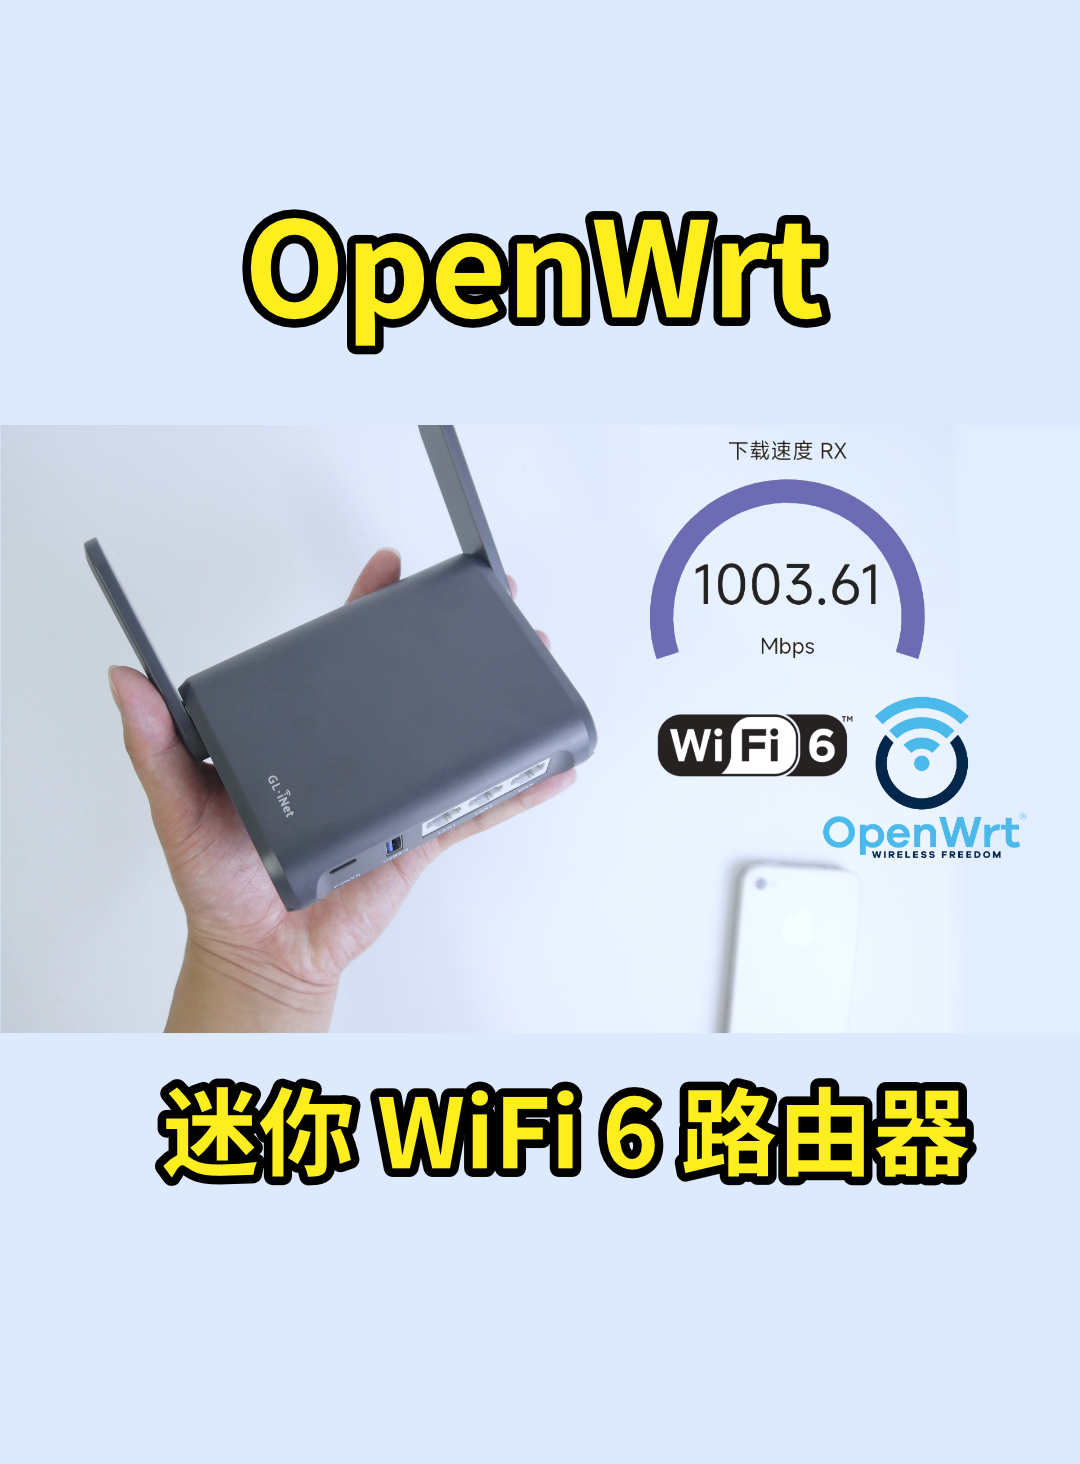 巴掌大的 WiFi6 路由器，openwrt 系統隨意編譯